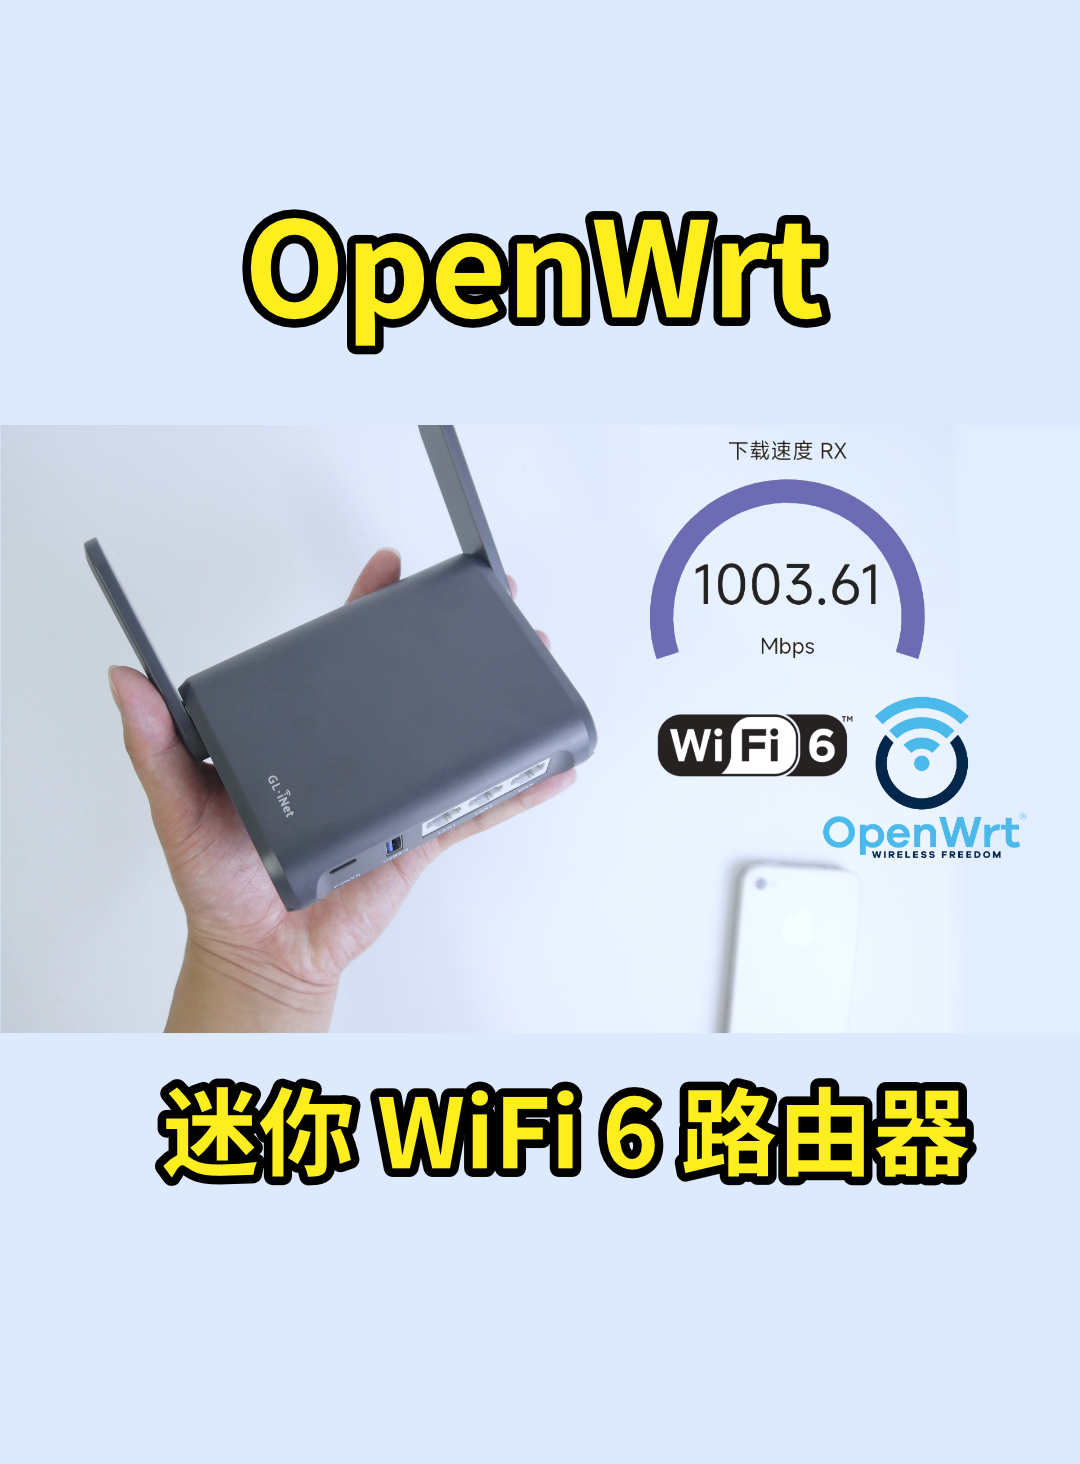 巴掌大的 WiFi6 路由器，openwrt 系統隨意編譯